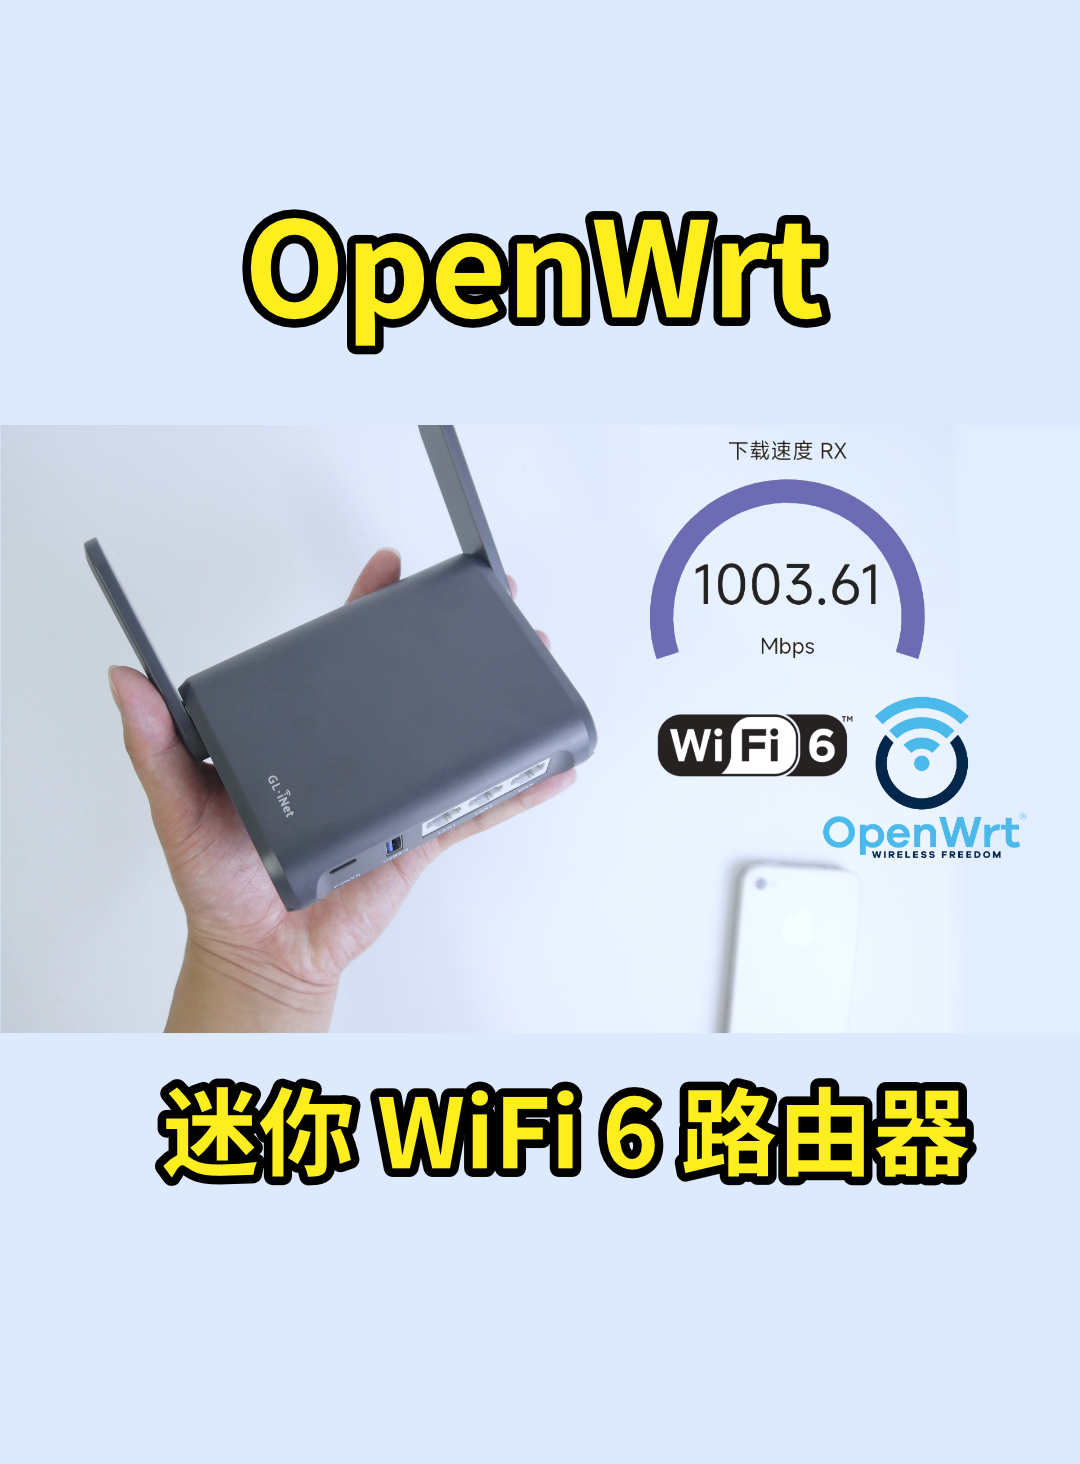 巴掌大的 WiFi6 路由器，openwrt 系統隨意編譯